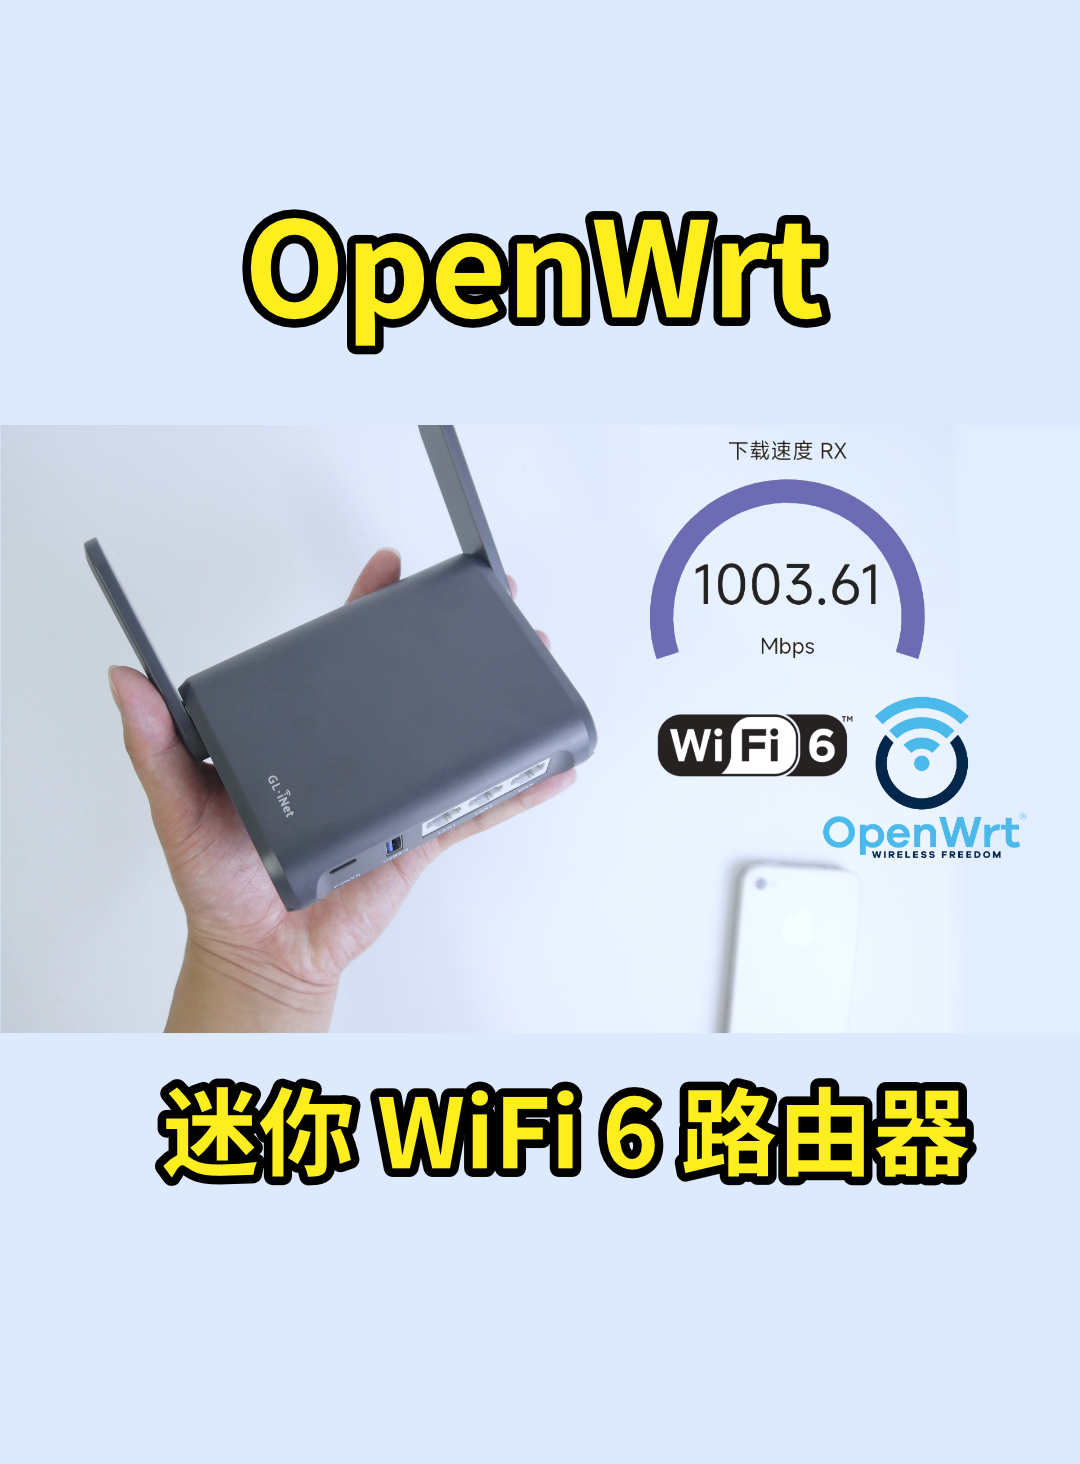 巴掌大的 WiFi6 路由器，openwrt 系統隨意編譯